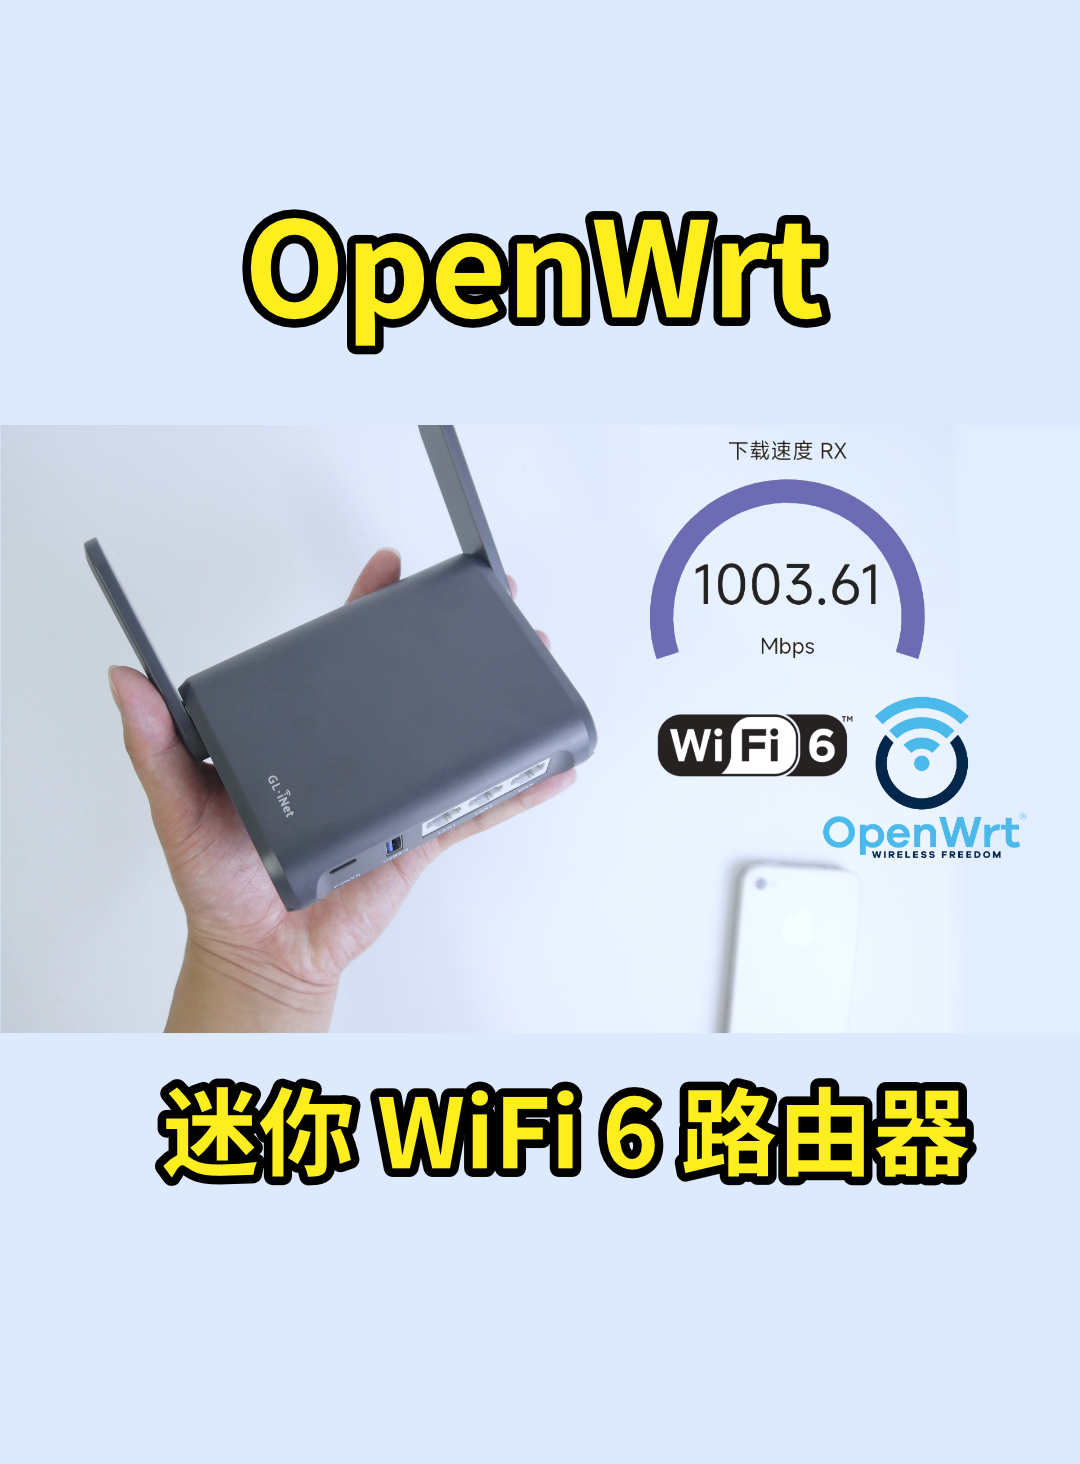 巴掌大的 WiFi6 路由器，openwrt 系統隨意編譯